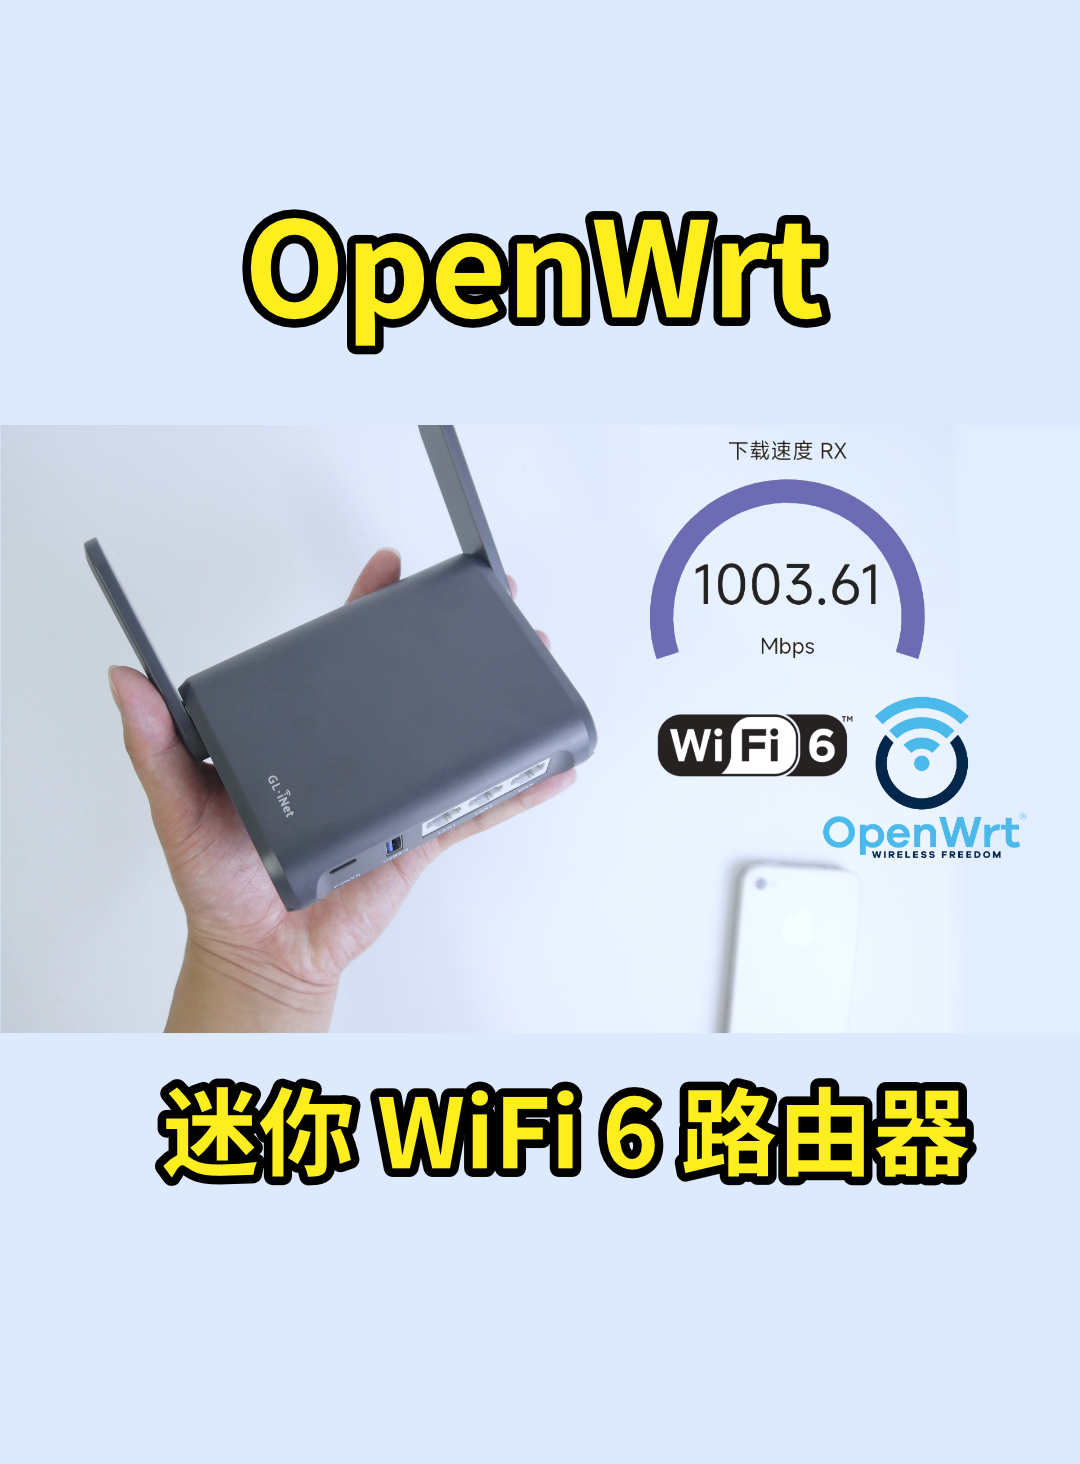 巴掌大的 WiFi6 路由器，openwrt 系統隨意編譯